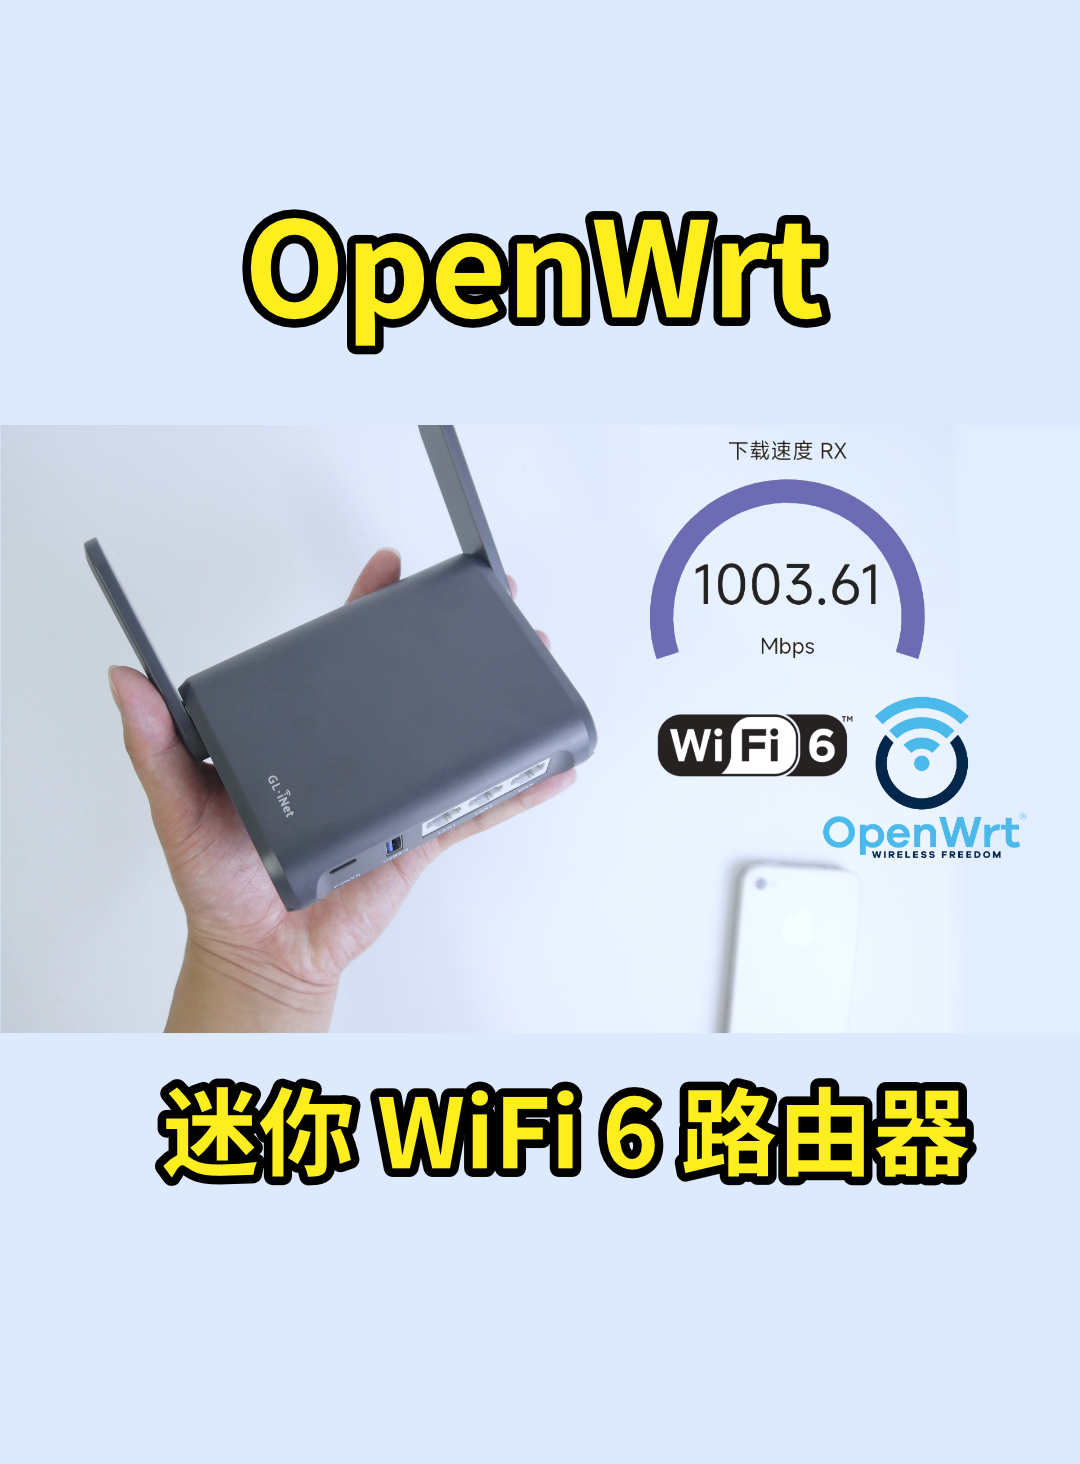 巴掌大的 WiFi6 路由器，openwrt 系統隨意編譯